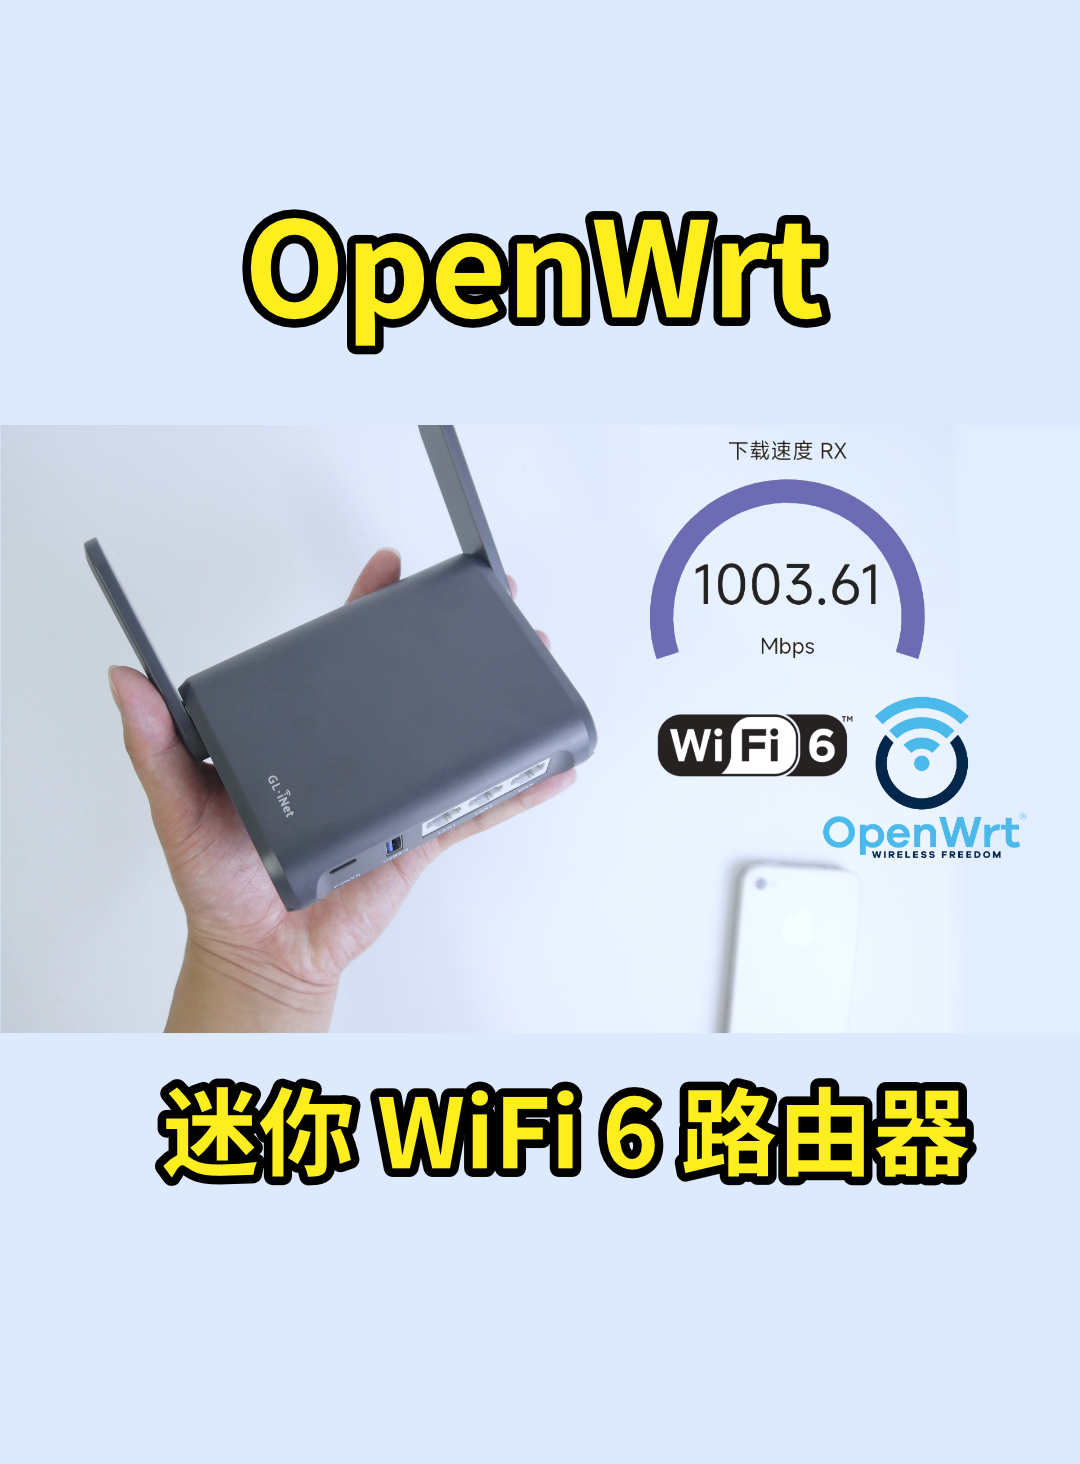 巴掌大的 WiFi6 路由器，openwrt 系統隨意編譯